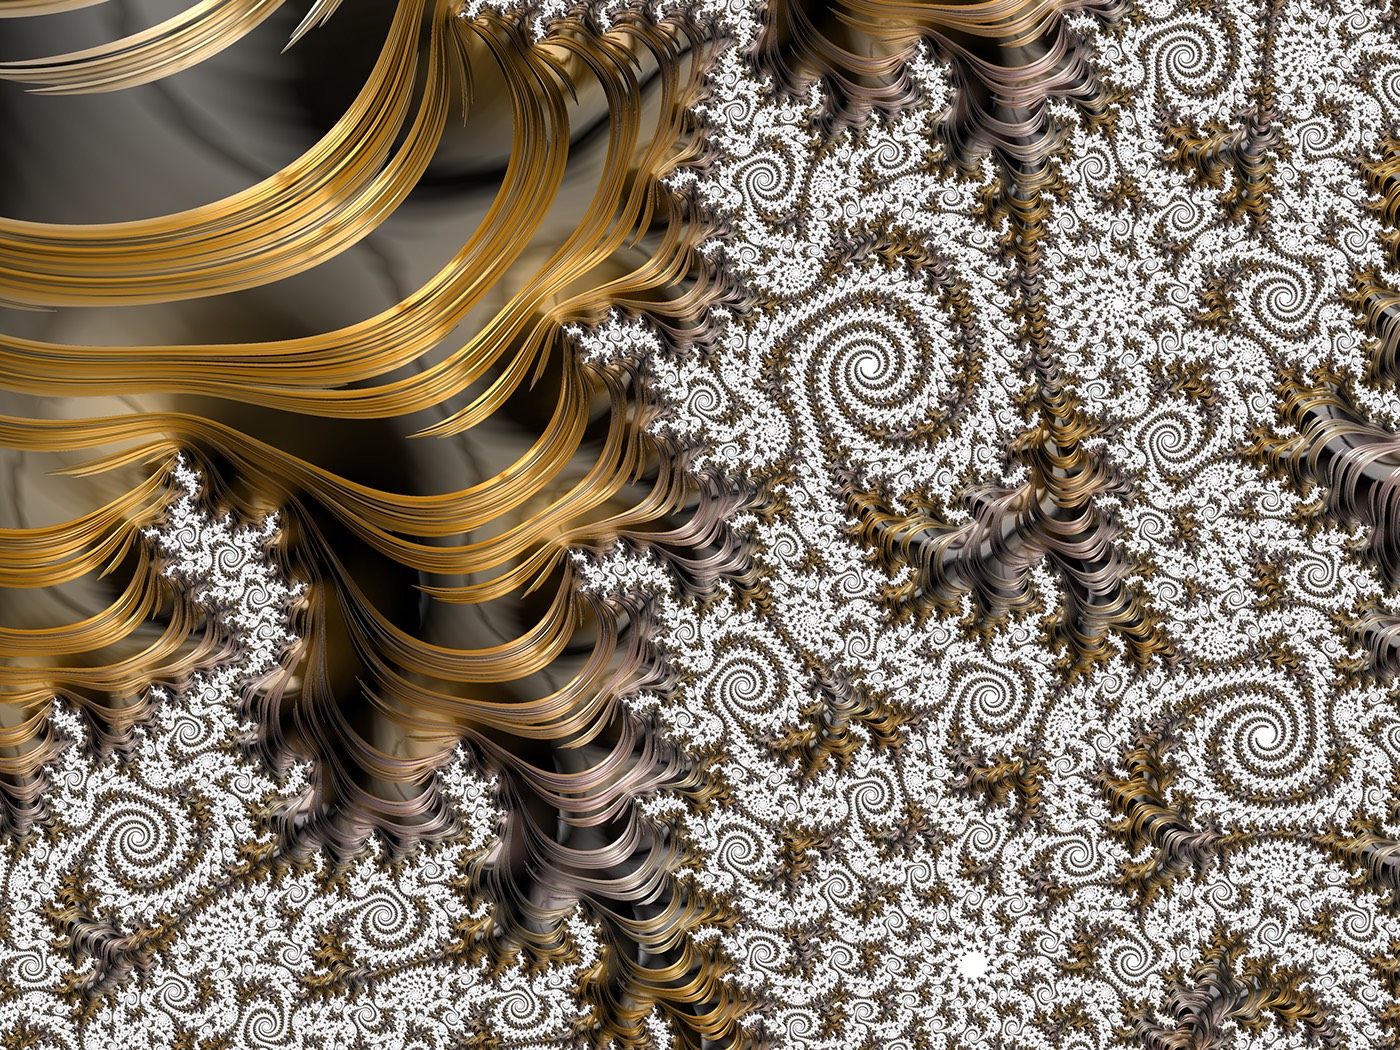 fractal Procedural mandelbulber Digital Art  concept art Landscape science-fiction sci-fi